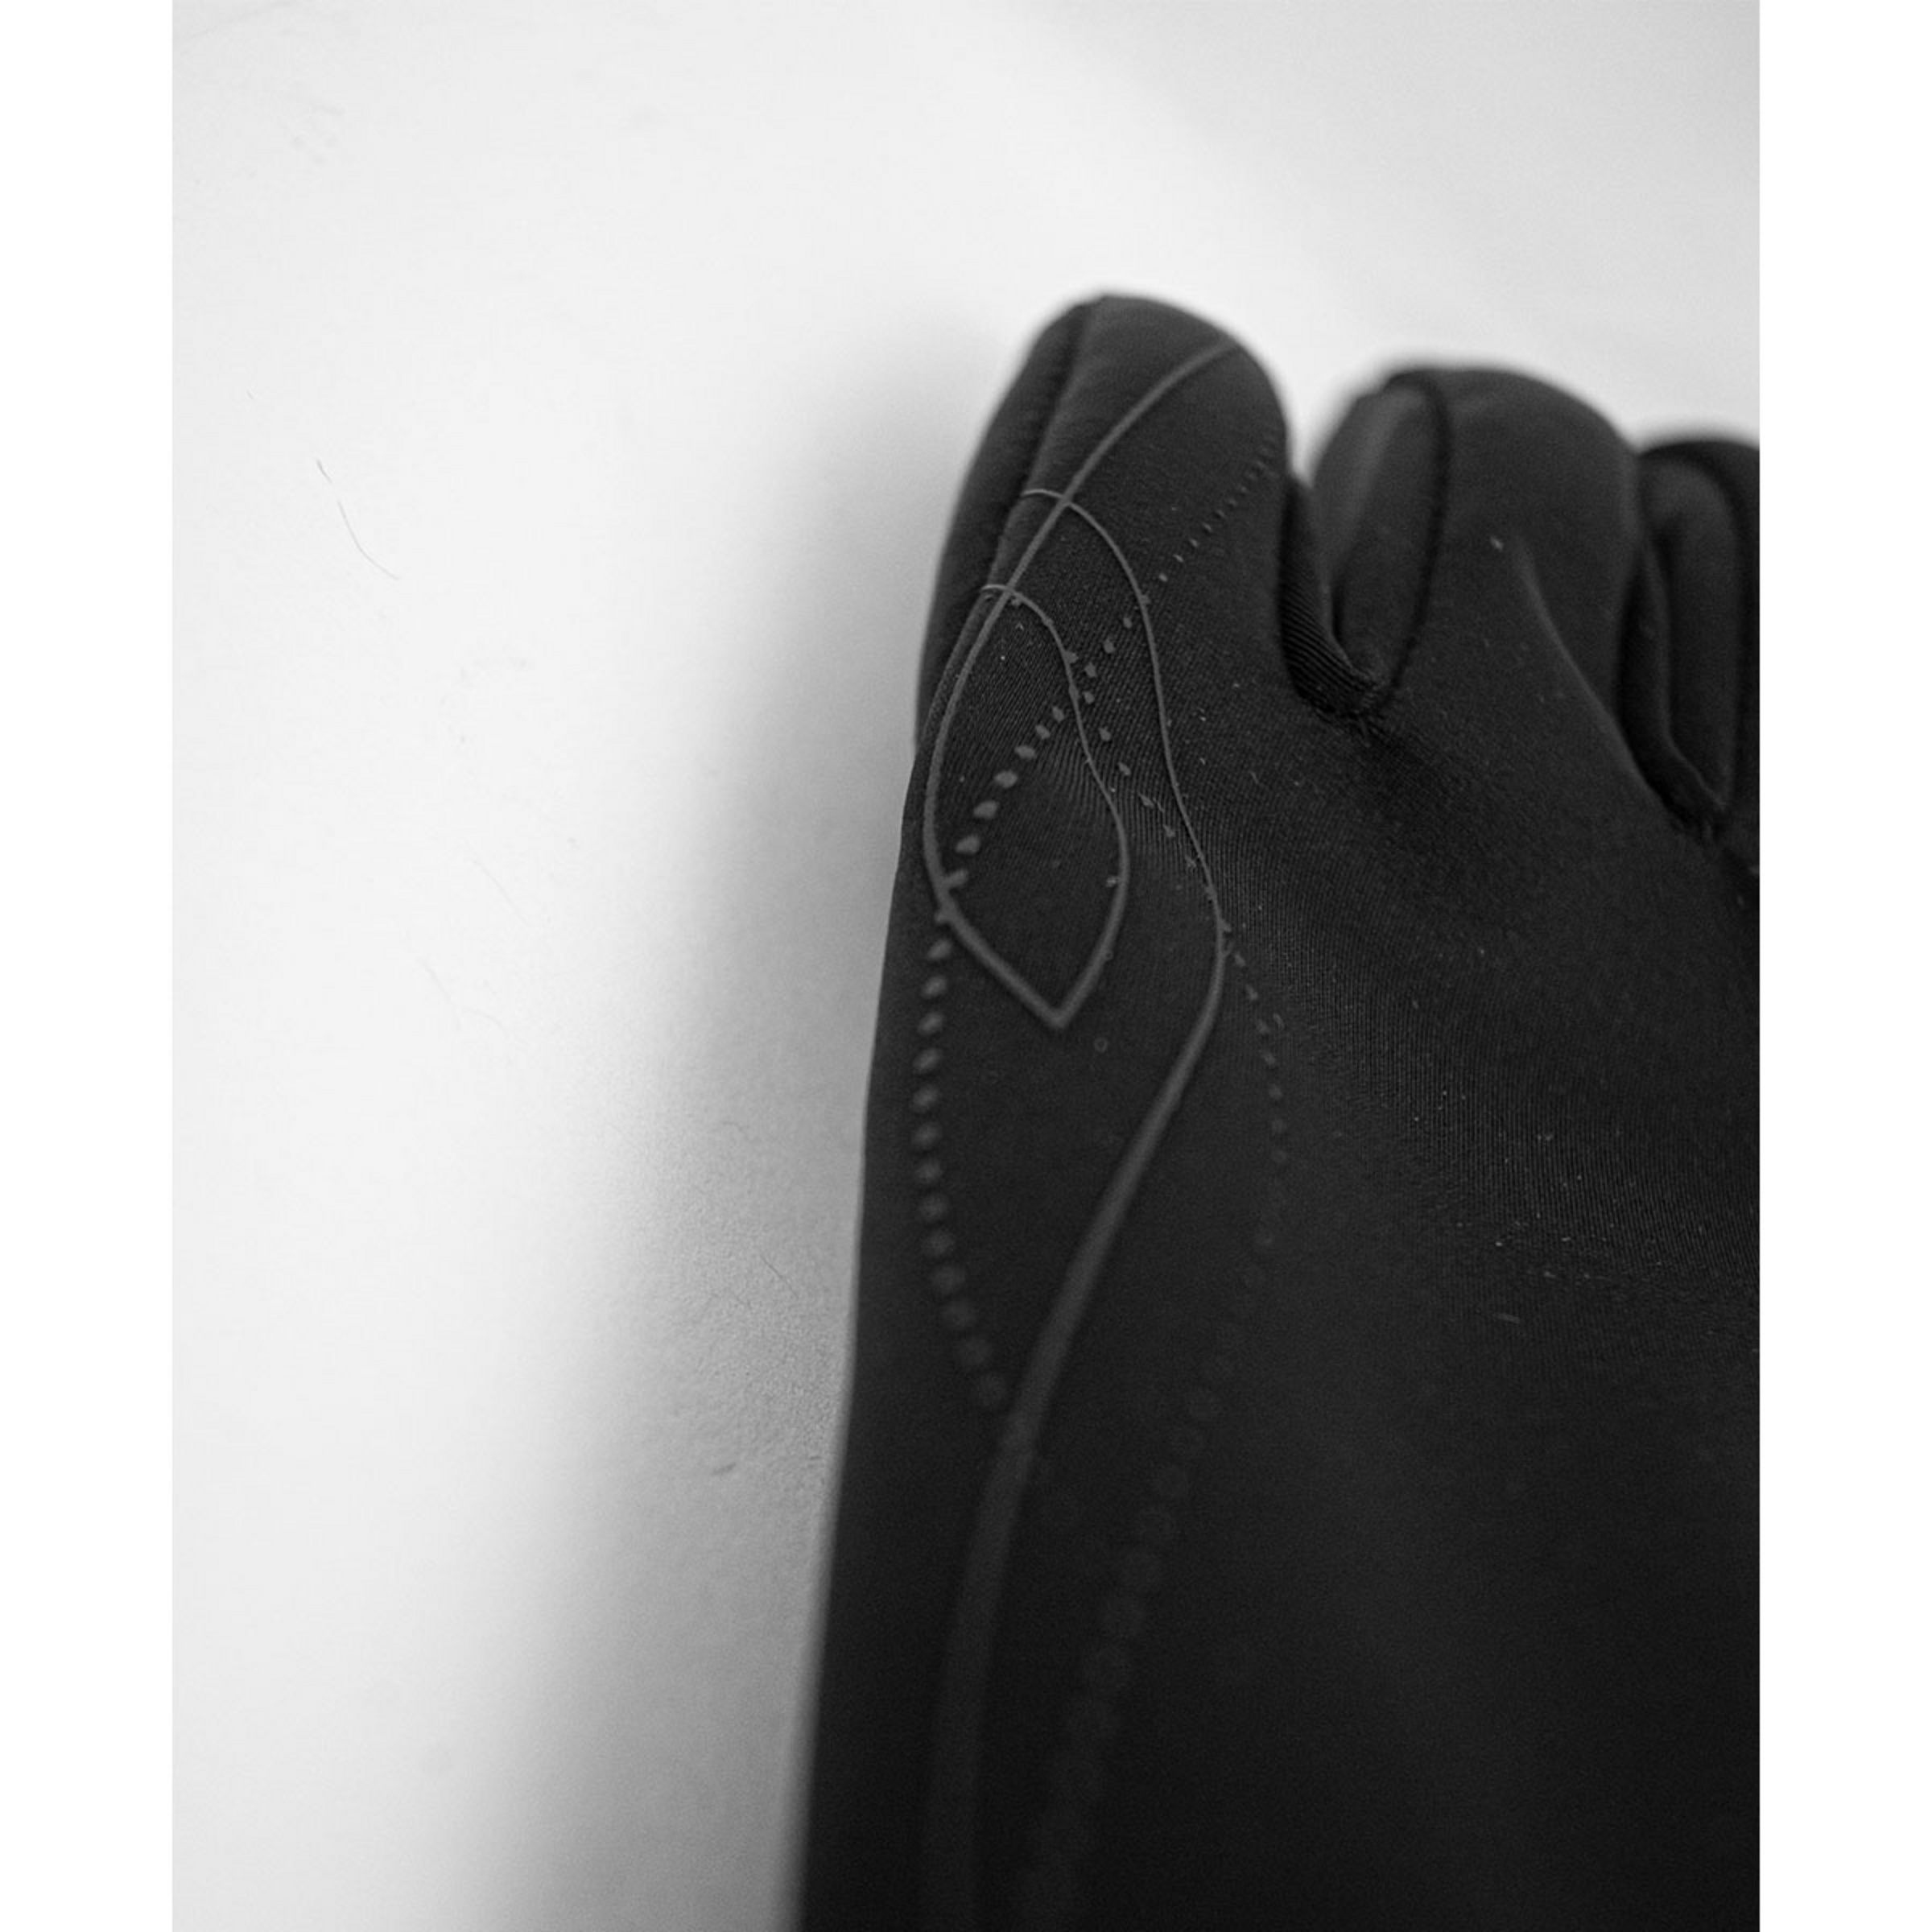 Reusch Damen Saskia Touch-Tec Handschuhe kaufen | Bergzeit